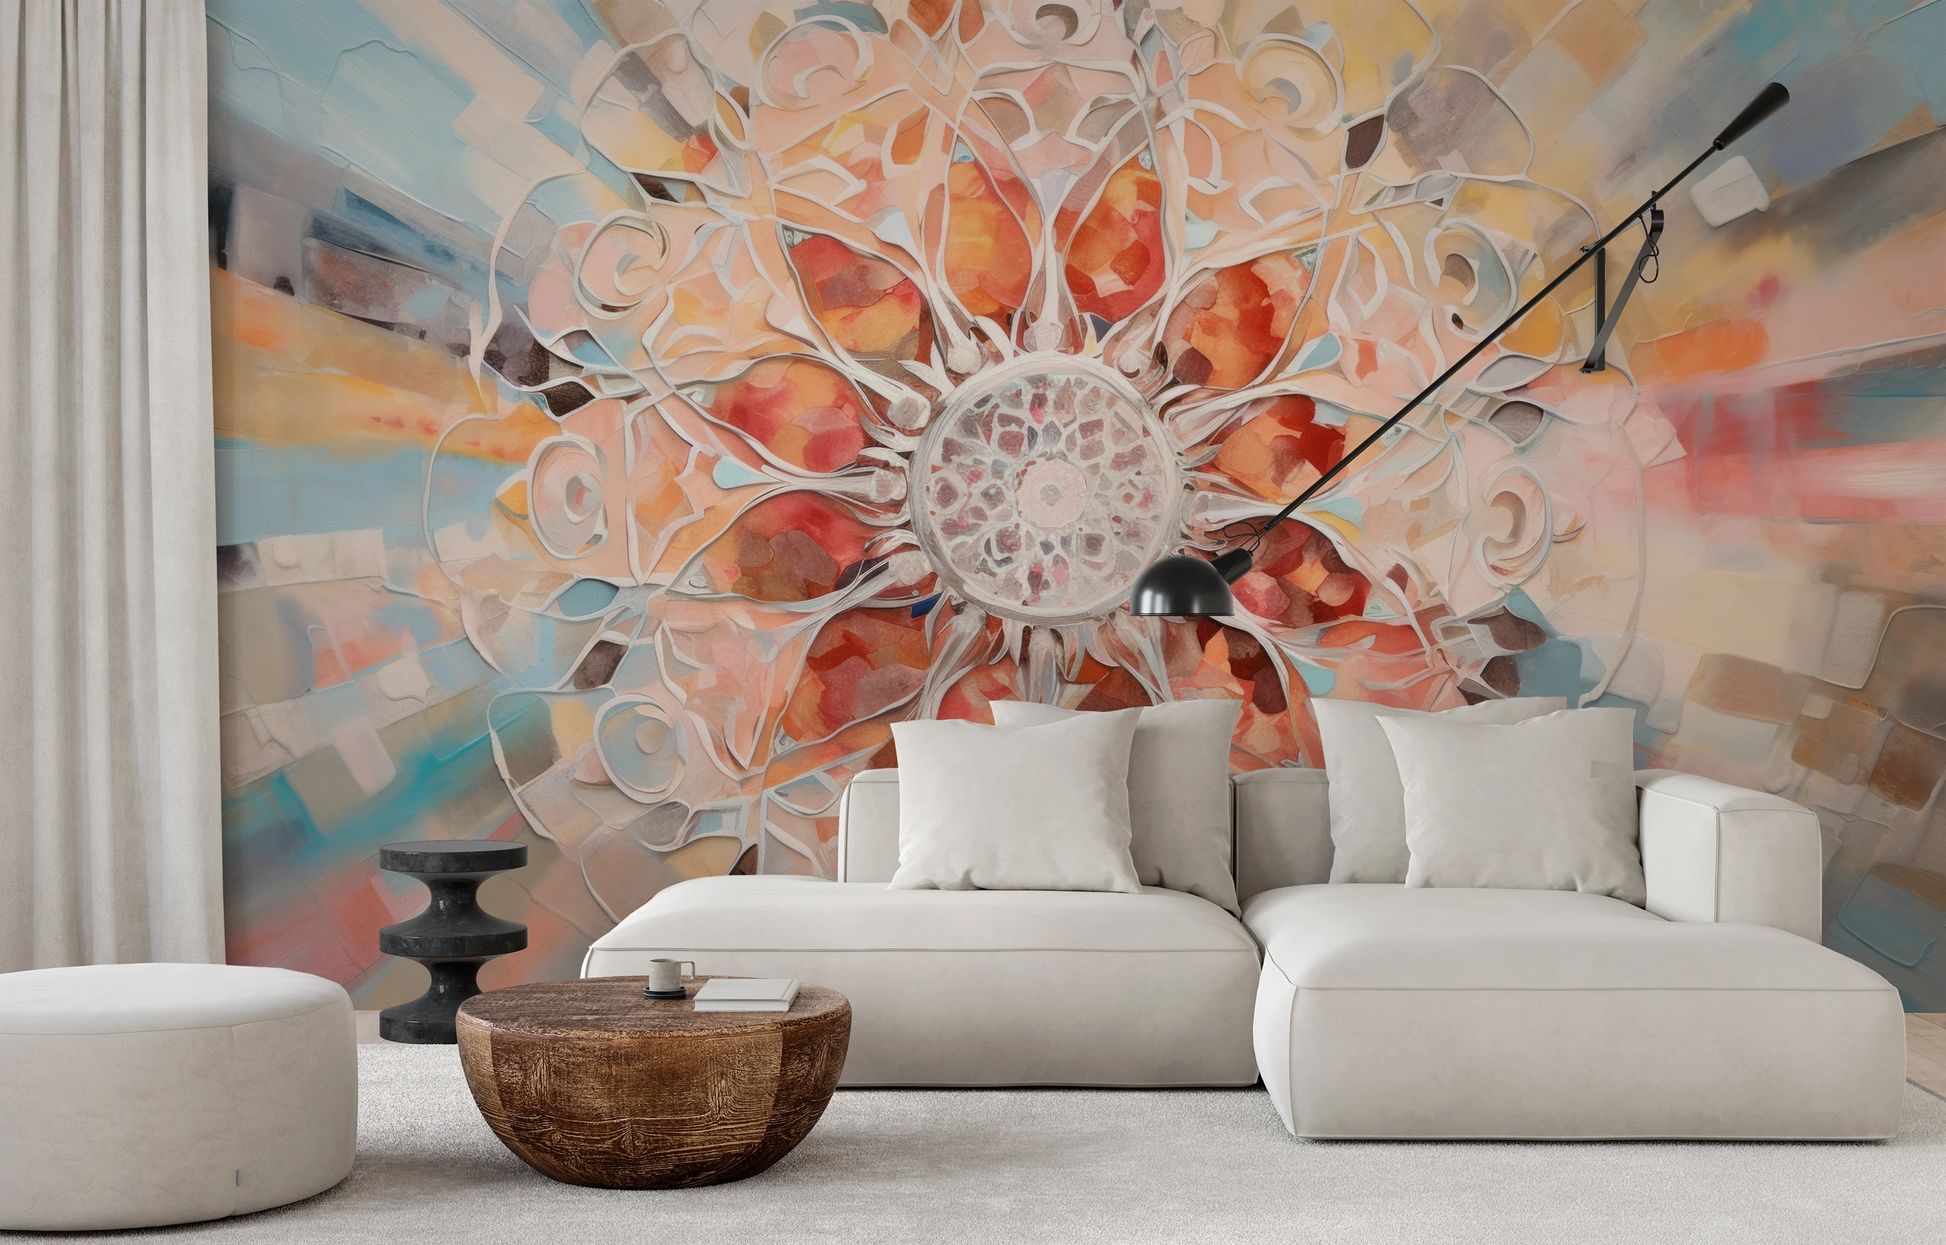 Fototapeta malowana o nazwie Crystal Mandala pokazana w aranżacji wnętrza.